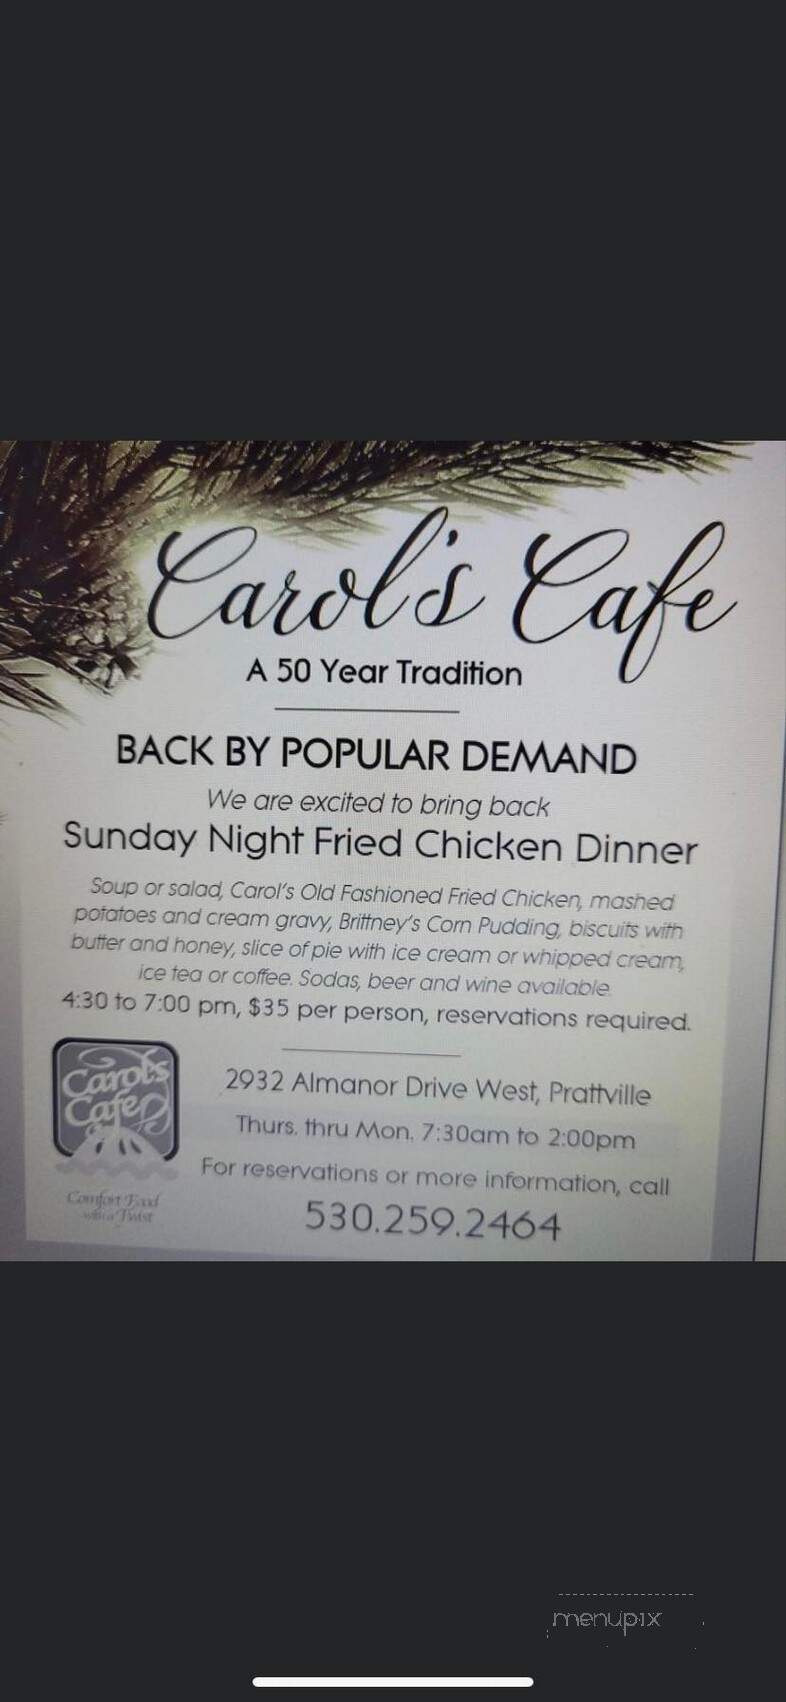 Carol's Cafe - Prattville, CA